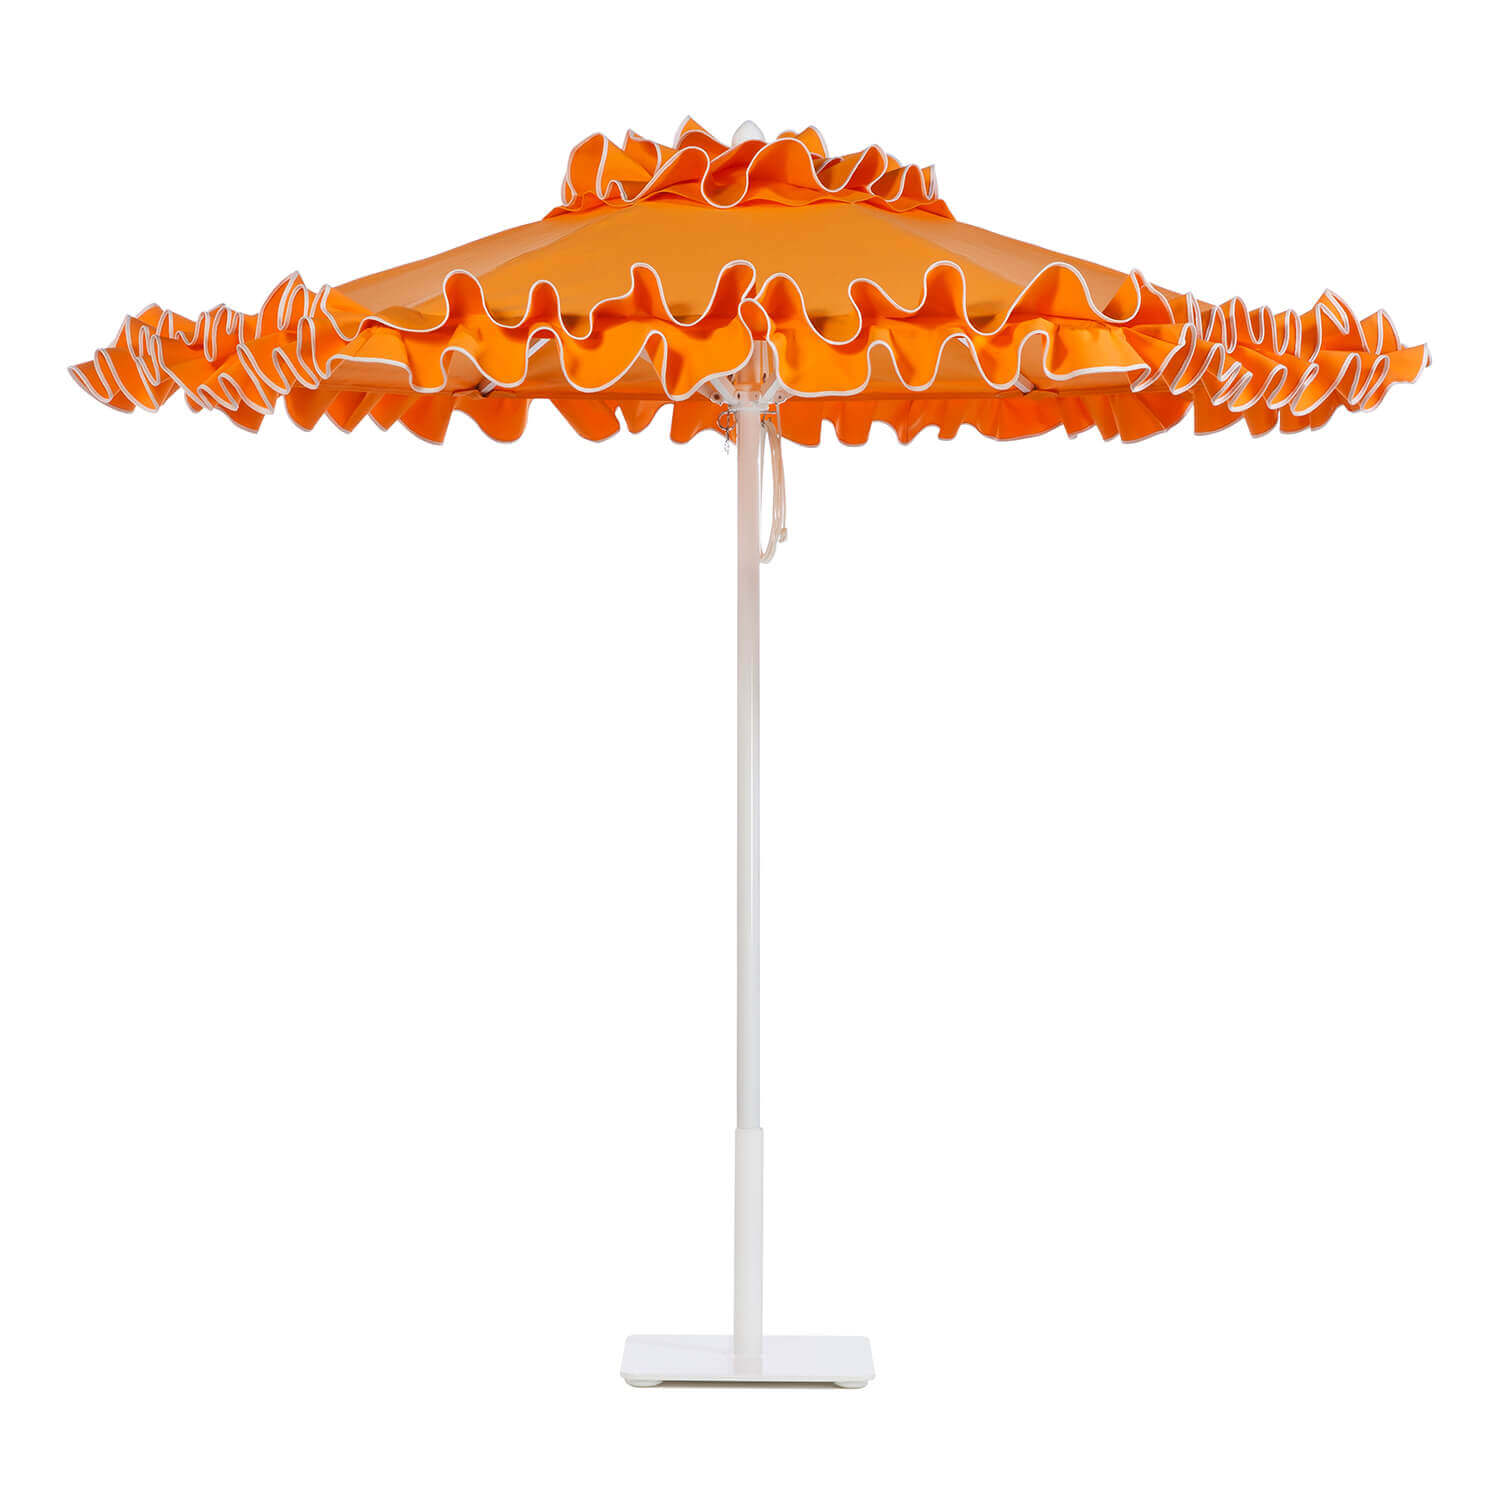 Tango Orange Umbrella Image